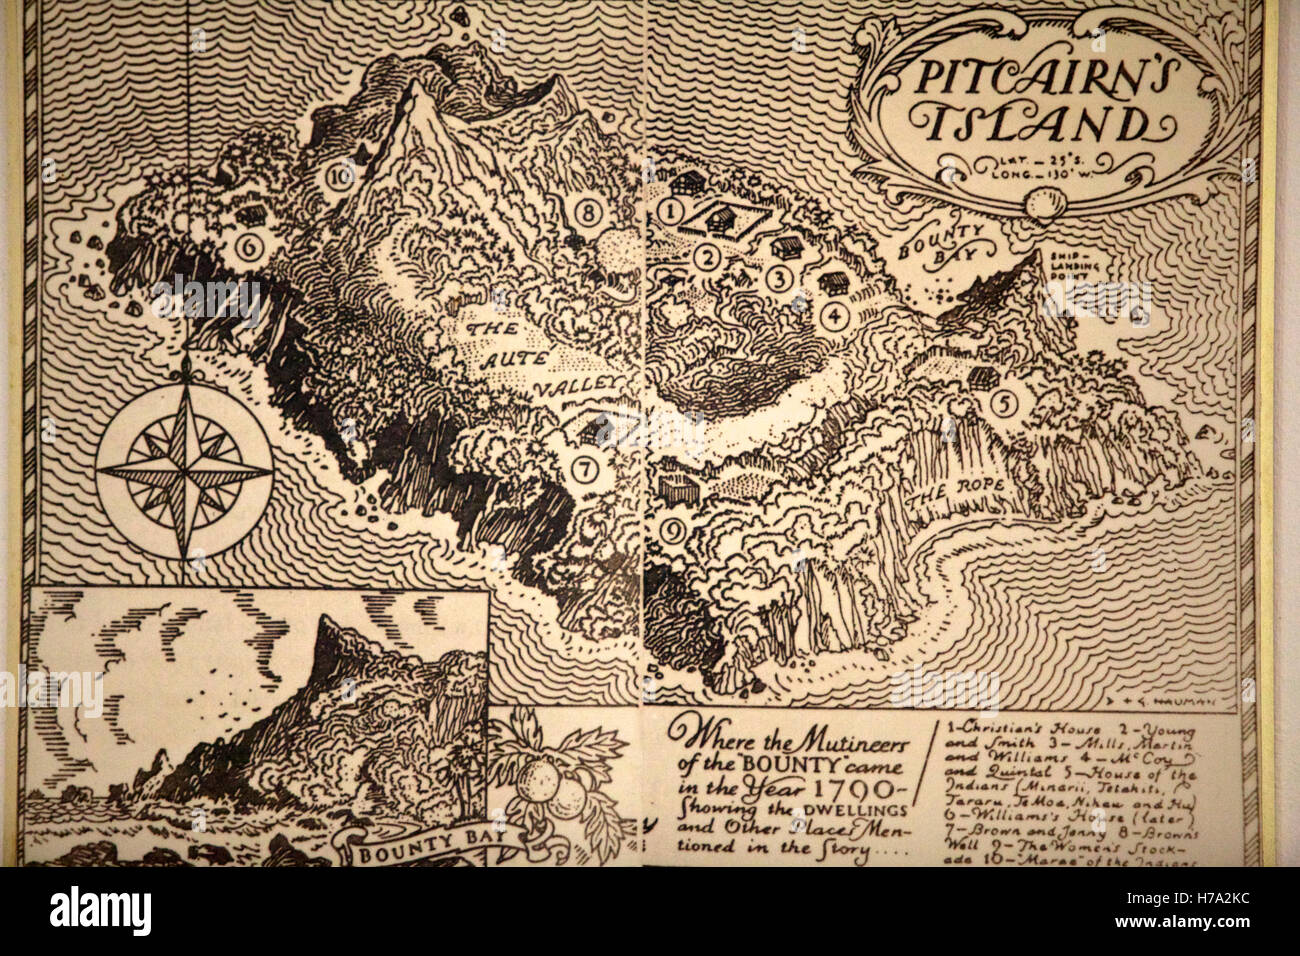 Pitcairn, Söhne von Meuterern! -14/06/2012 - Pitcairn / Pitcairn - Karte von Pitcairn Insel - Olivier Goujon / Le Pictorium Stockfoto